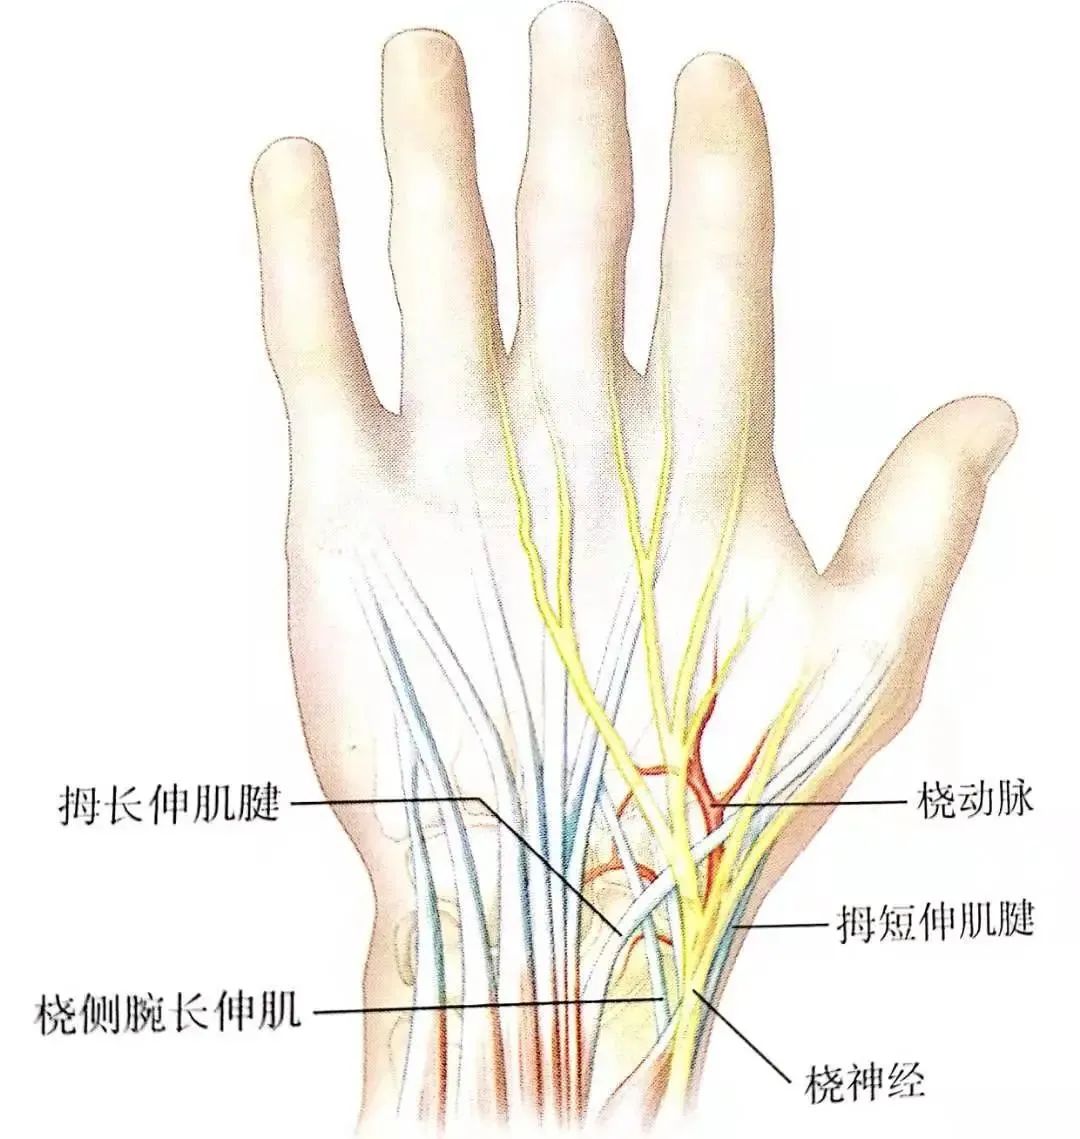 『8分钟创伤』轻松掌握：舟骨骨折骨折分型及治疗方案 - 上海开为医药科技有限公司--创伤、肢体矫形技术解决方案的专业服务商